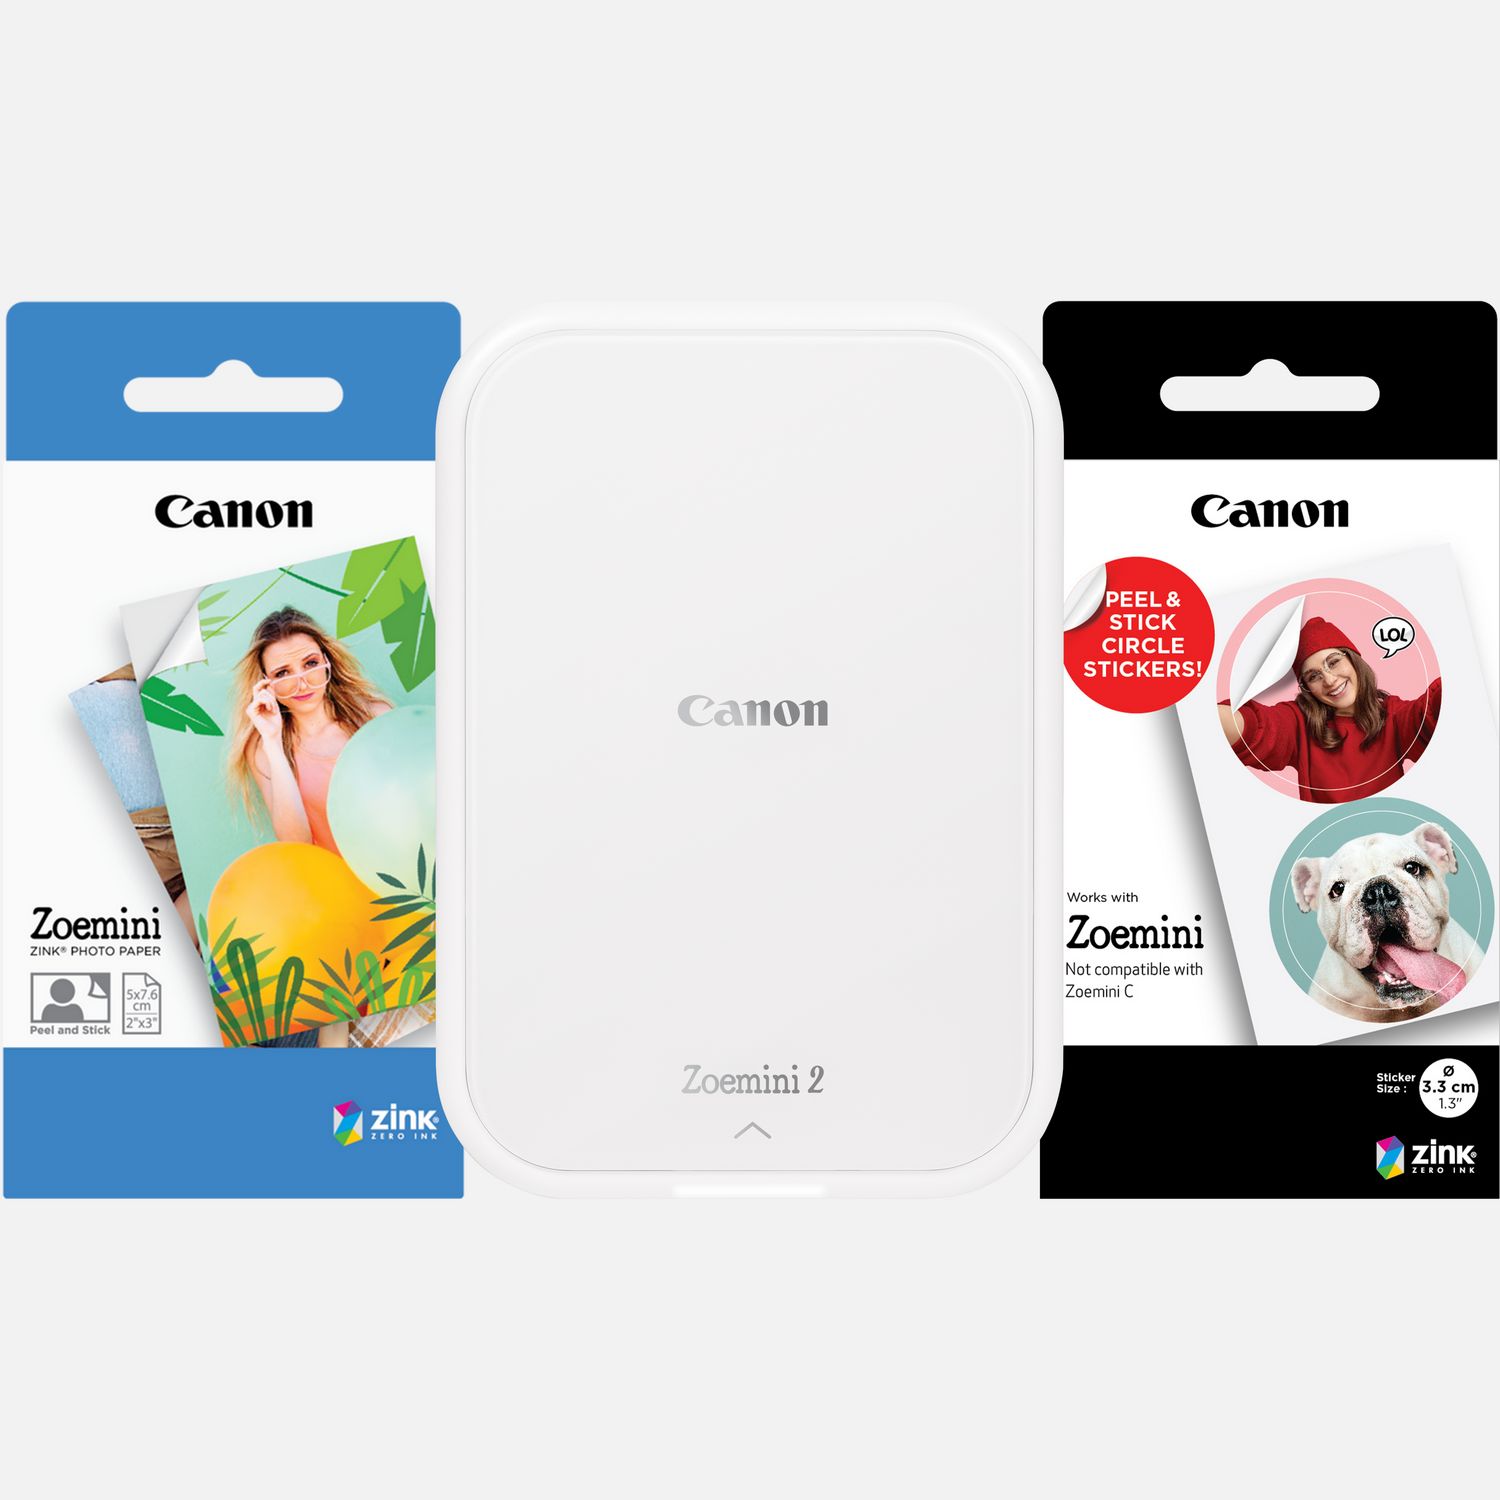 Stampante fotografica portatile a colori Canon Zoemini 2, bianco + Carta fotografica ZINK™ 5 x 7,6 cm (20 fogli) + Carta adesiva circolare ZINK™ 3,3 cm (10 fogli)